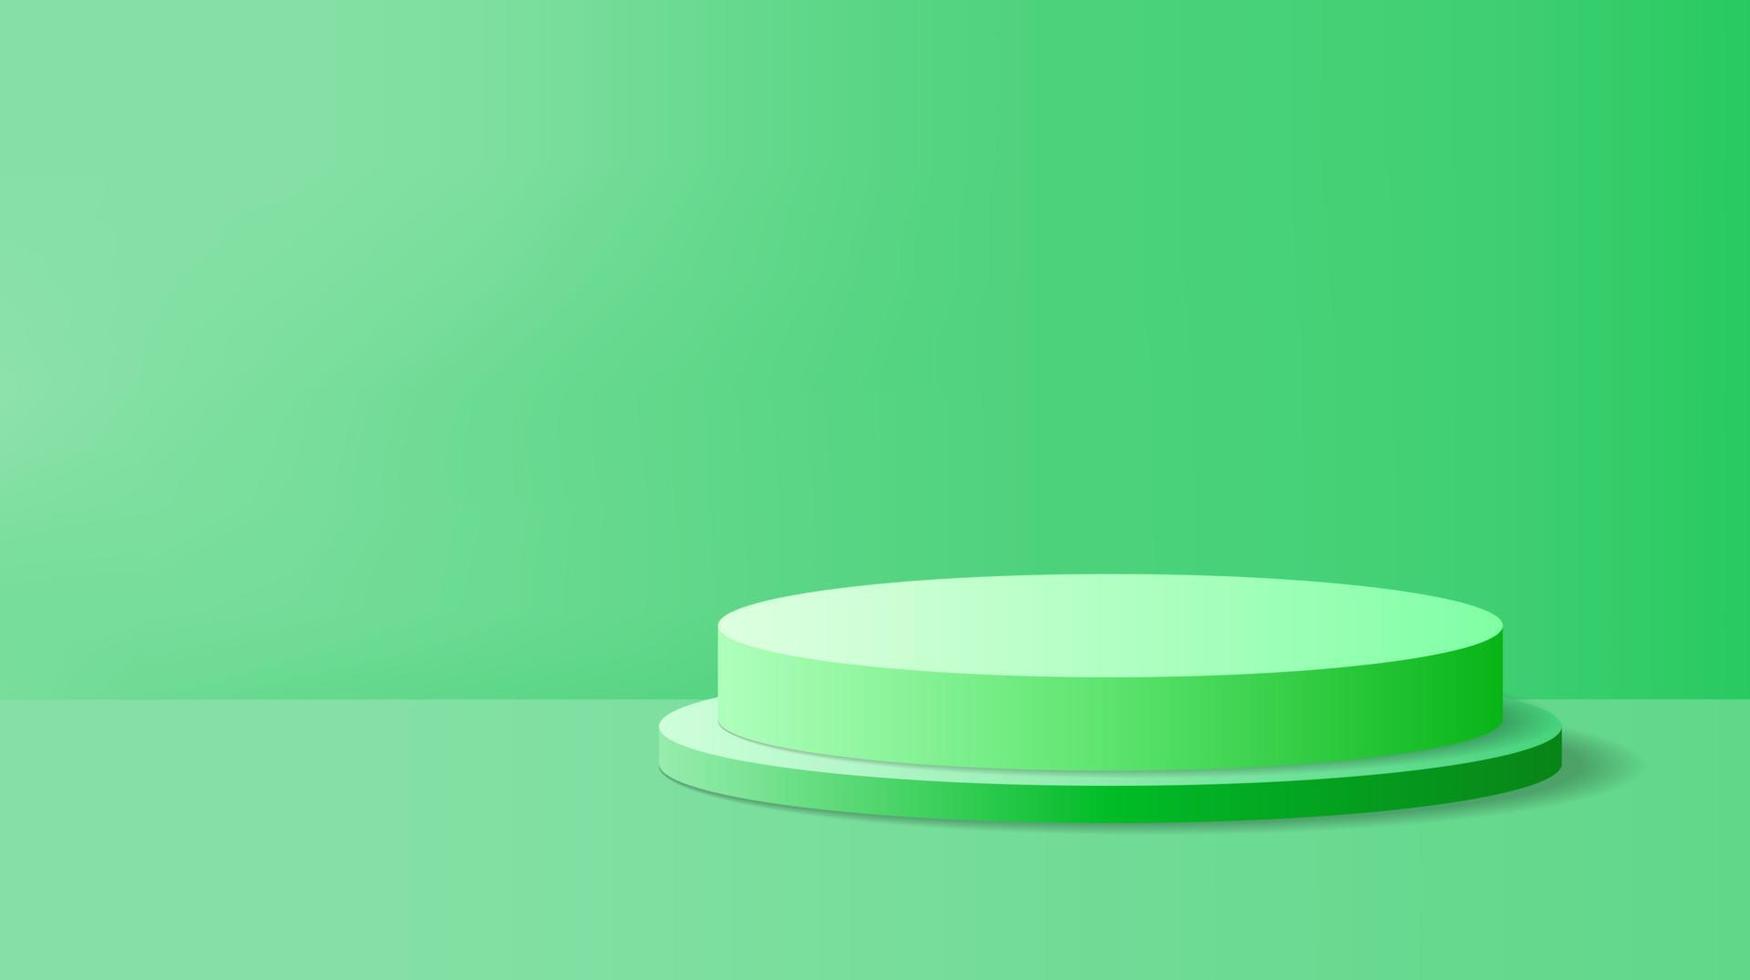 abstrakt Grün Produkt Anzeige Hintergrund mit 3d machen Zylinder Sockel Podium. Grün minimal Mauer Szene zum Produkt Anzeige Präsentation. geometrisch Bühne Plattform Vektor